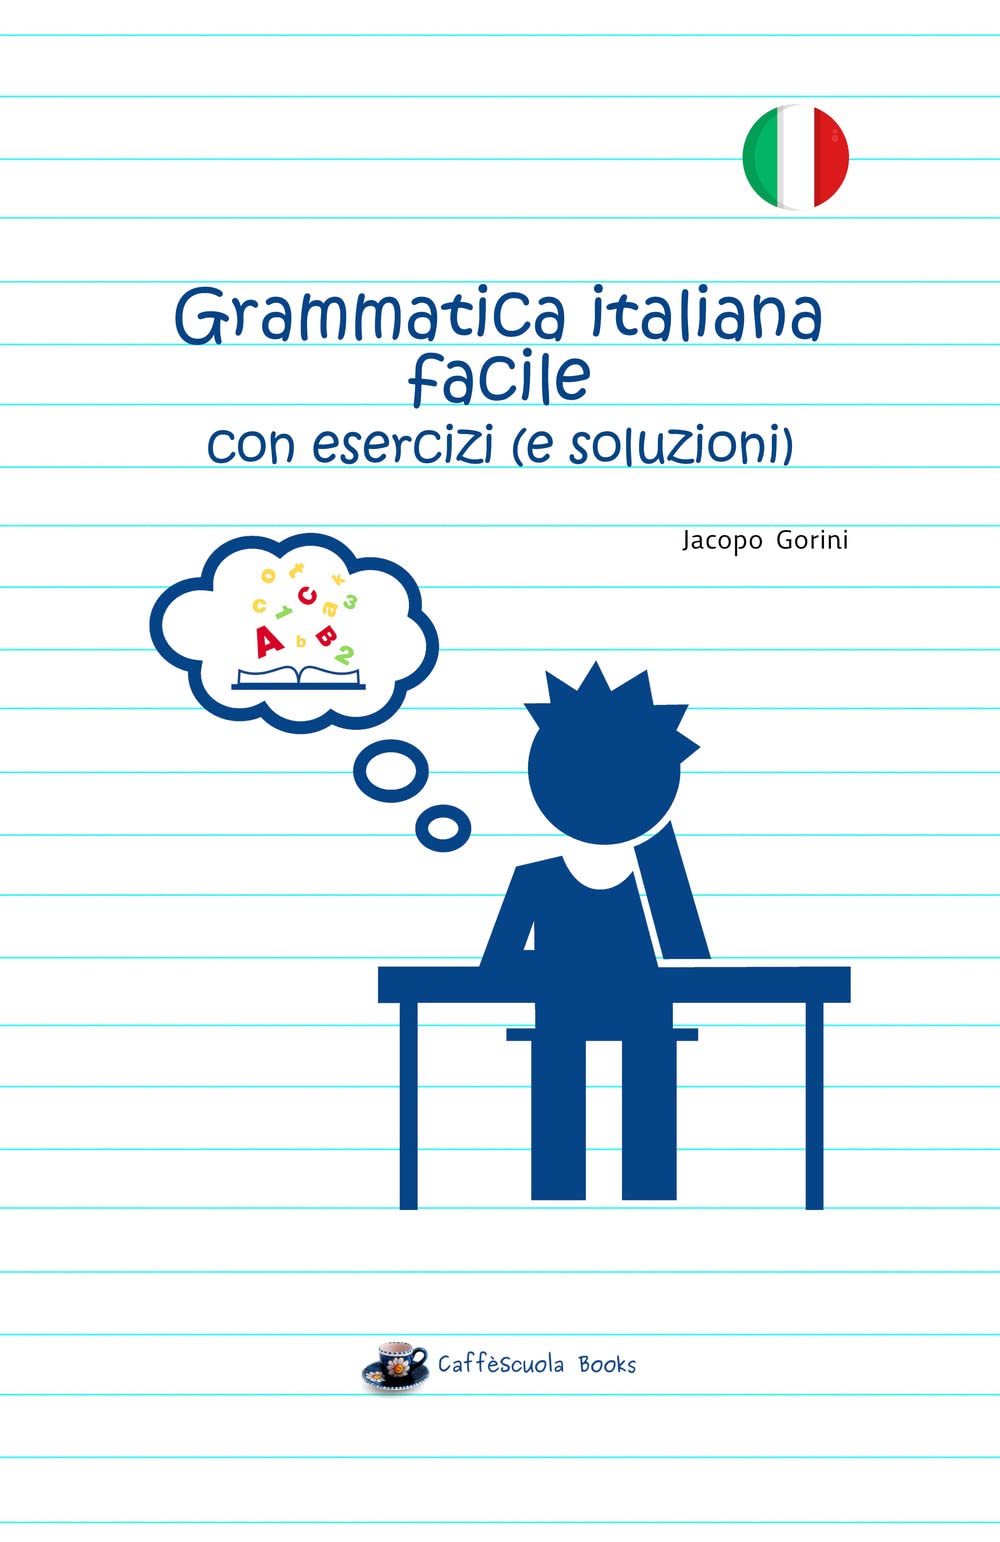 Libri Jacopo Gorini - Grammatica Italiana Facile Con Esercizi (E Soluzioni) NUOVO SIGILLATO, EDIZIONE DEL 17/01/2023 SUBITO DISPONIBILE